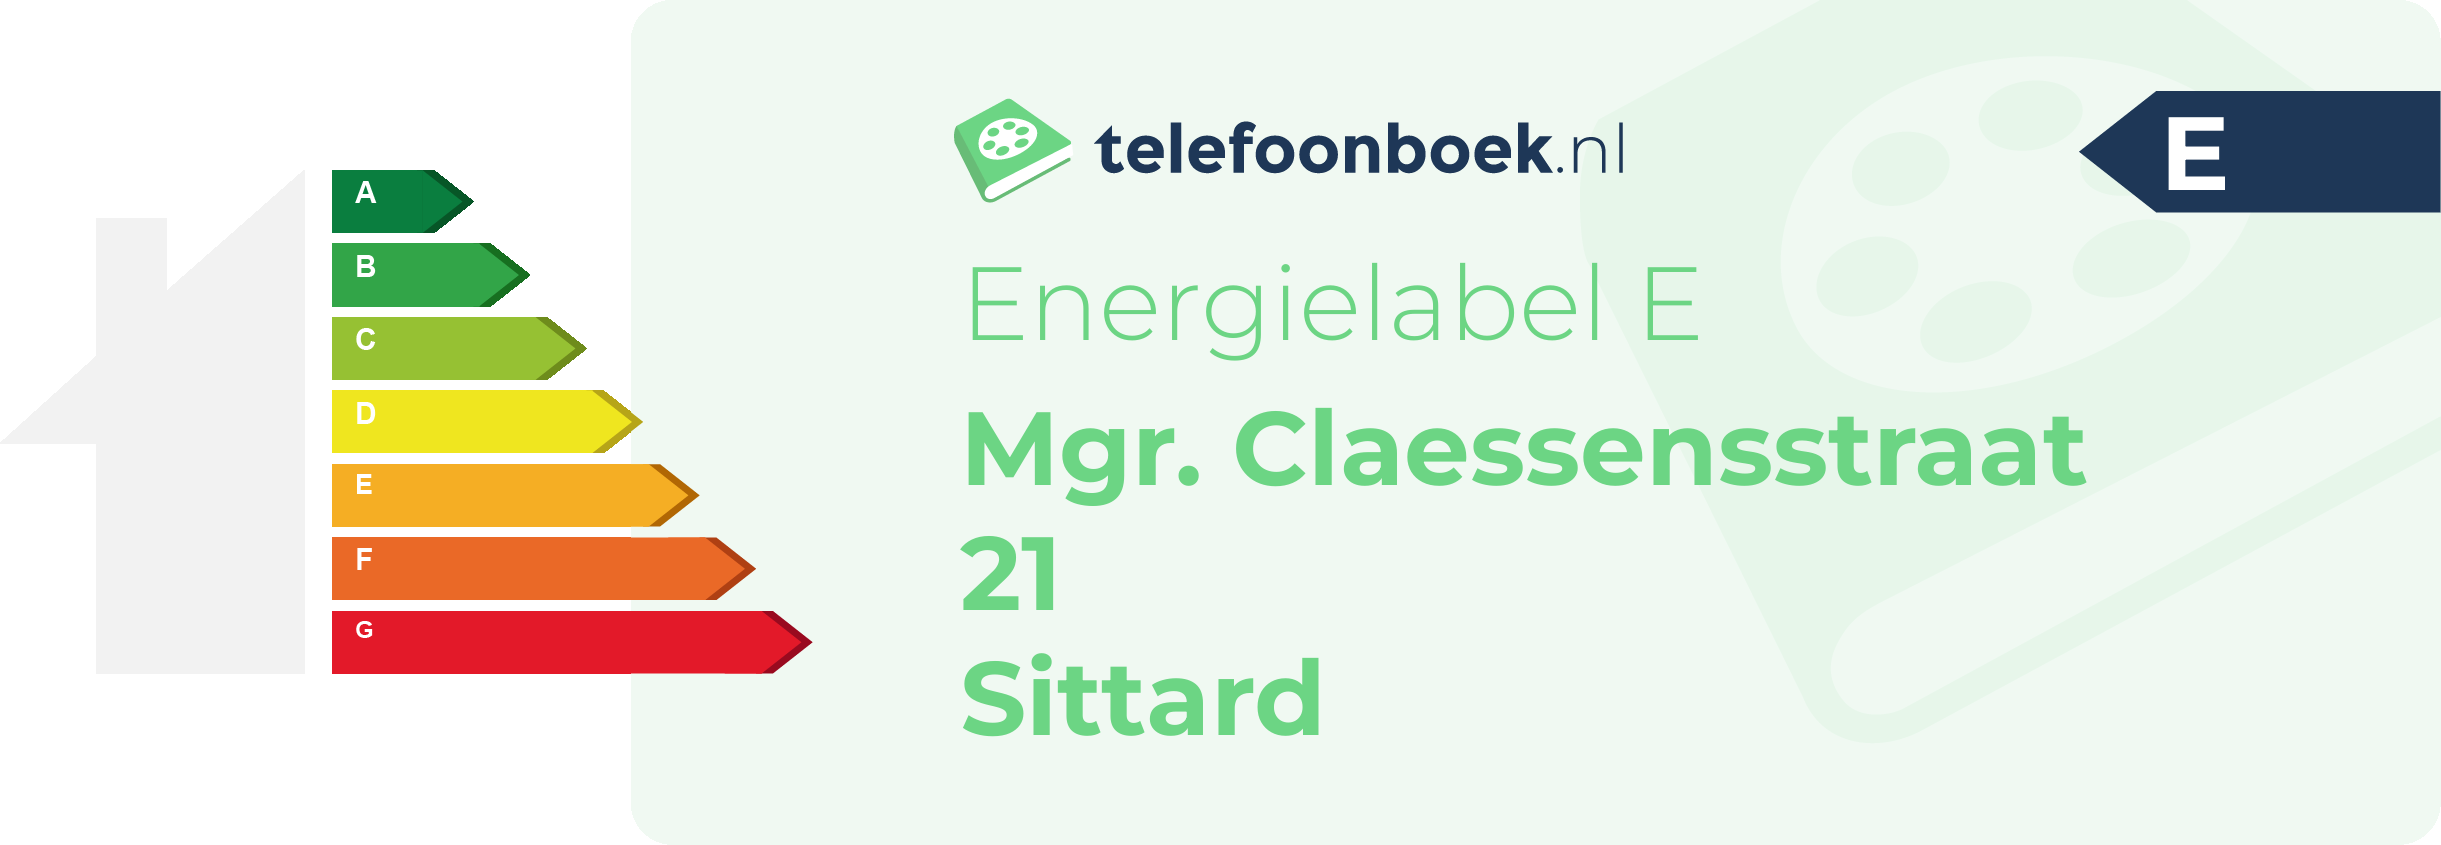 Energielabel Mgr. Claessensstraat 21 Sittard